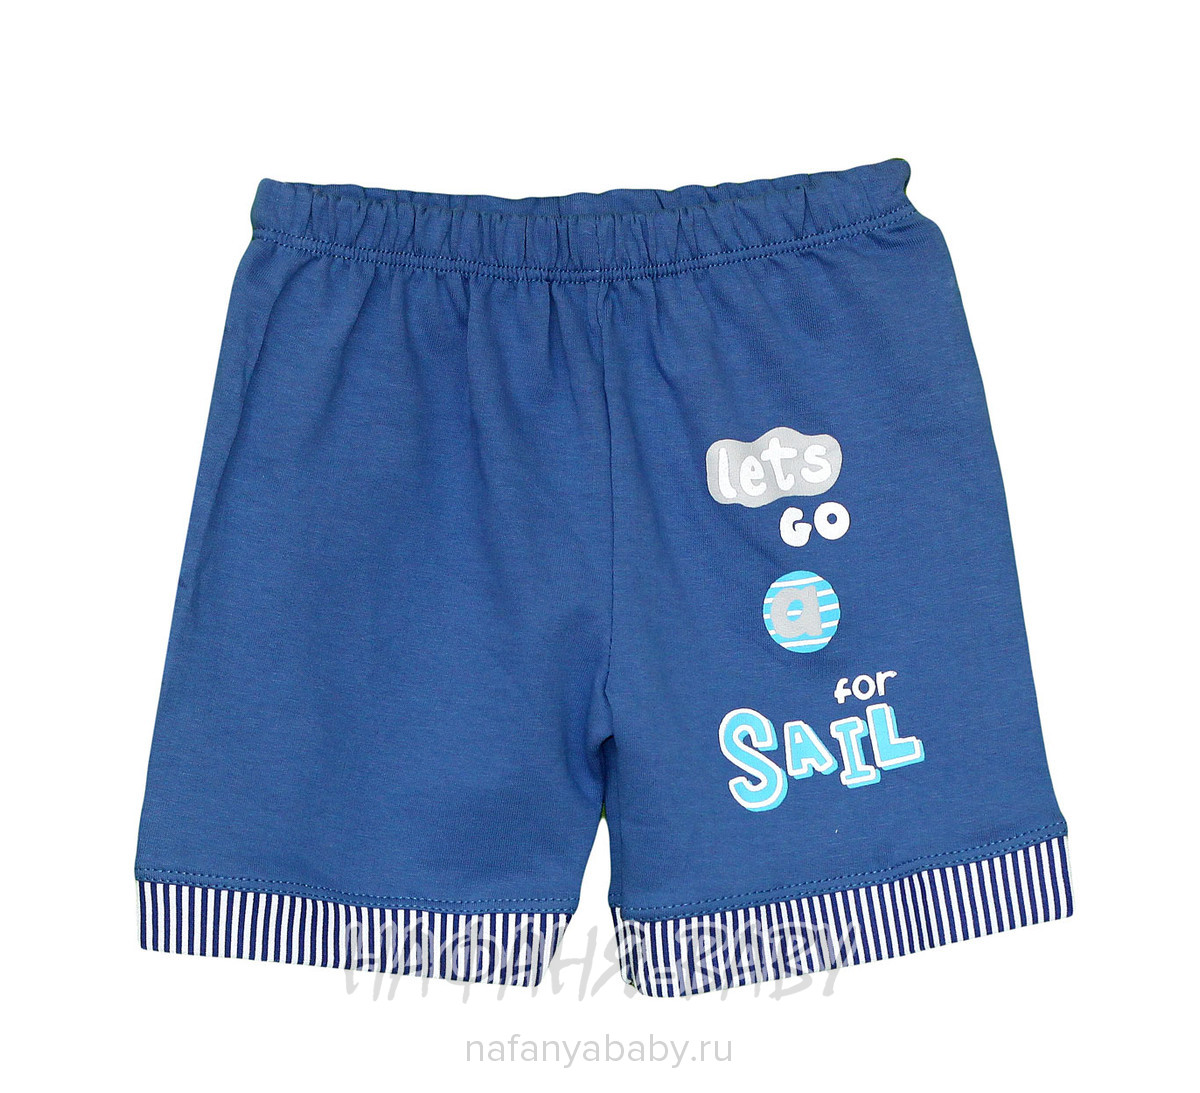 Детские шорты YAGIS, купить в интернет магазине Нафаня. арт: 907.